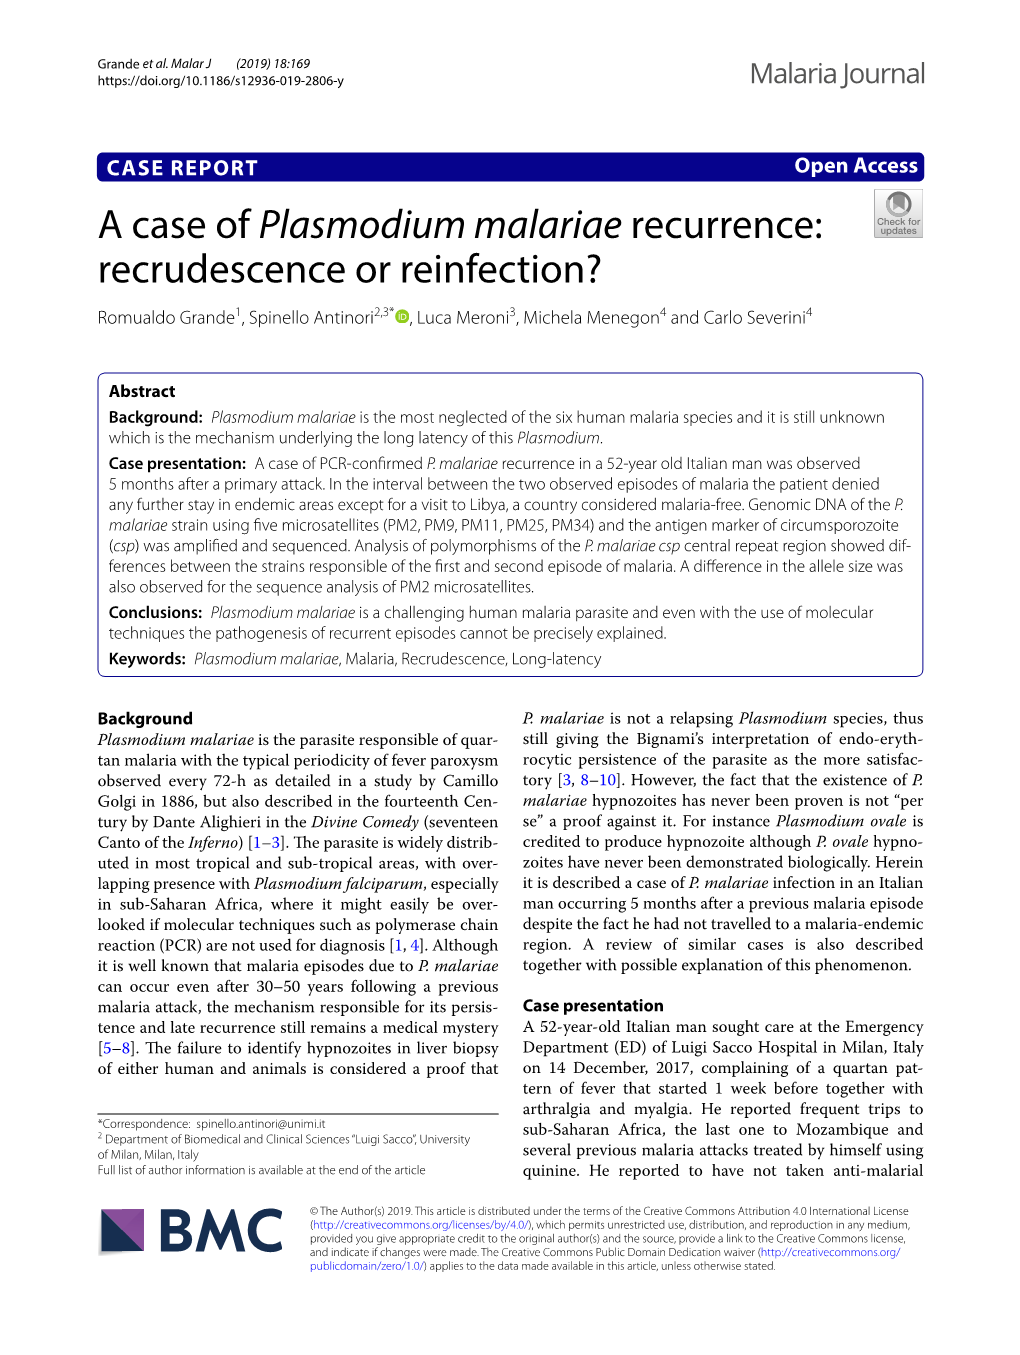 A Case of Plasmodium Malariae Recurrence: Recrudescence Or Reinfection? Romualdo Grande1, Spinello Antinori2,3* , Luca Meroni3, Michela Menegon4 and Carlo Severini4